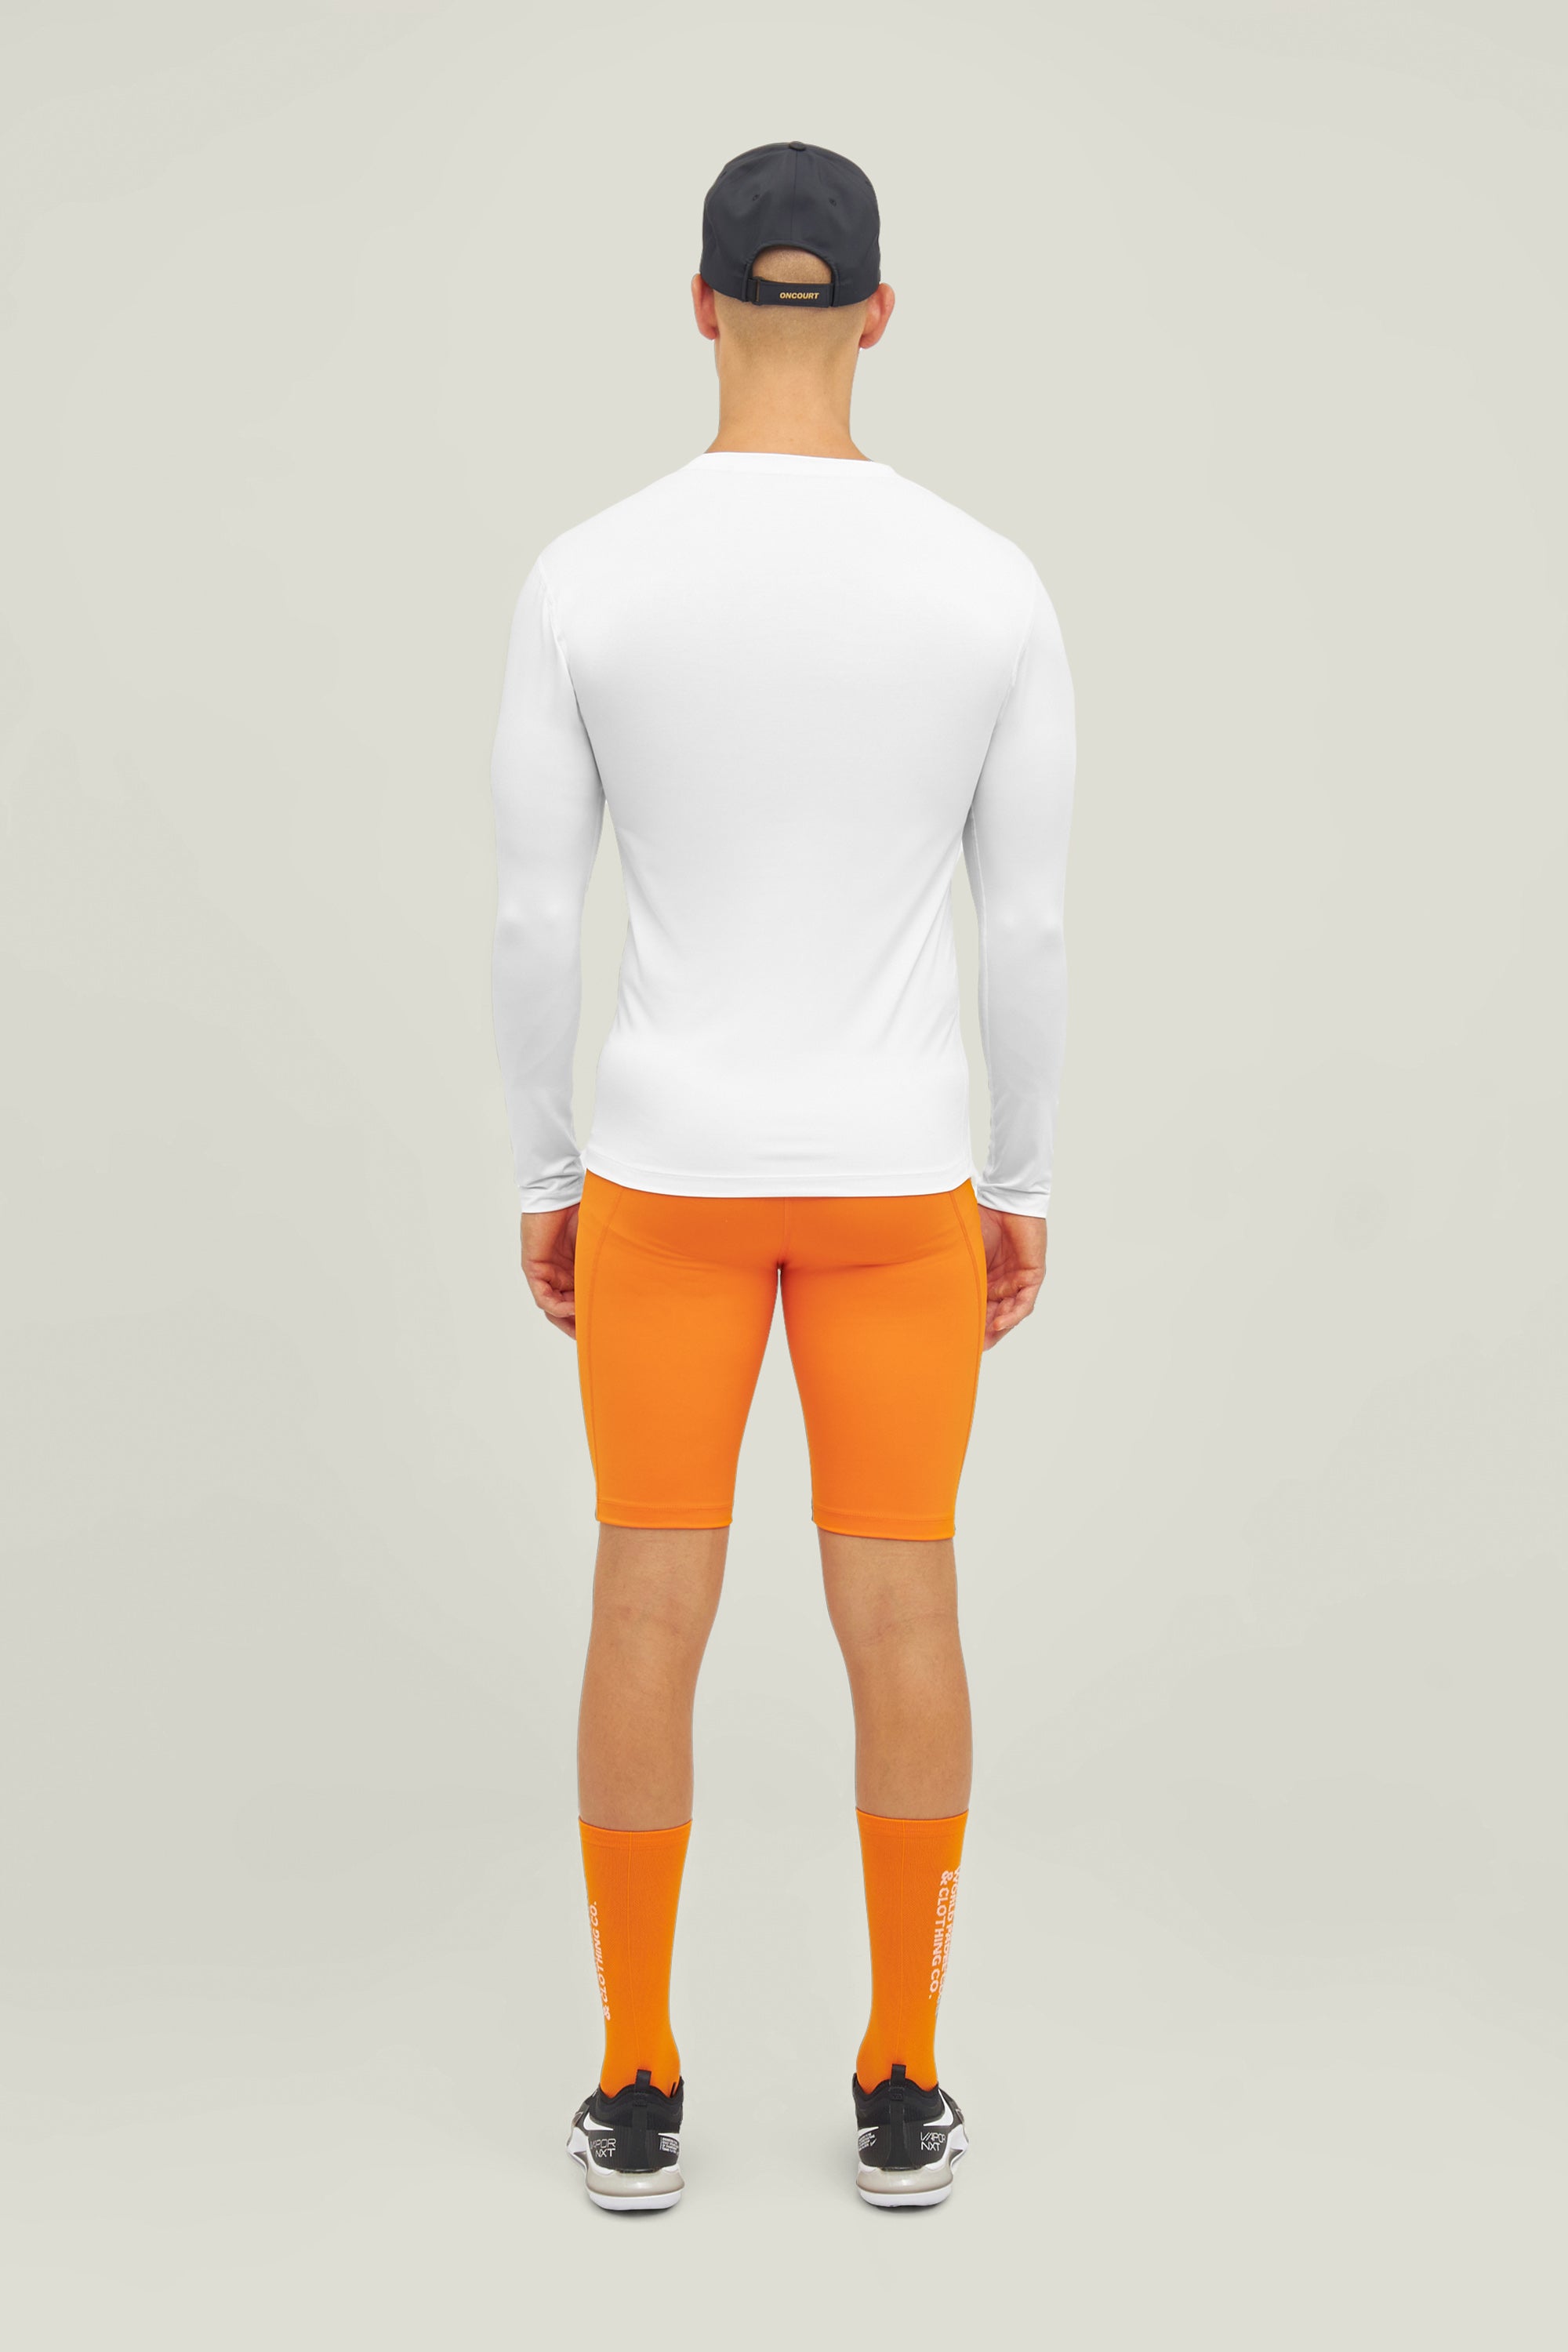 Cuera Oncourt Layer Tights (Orange)